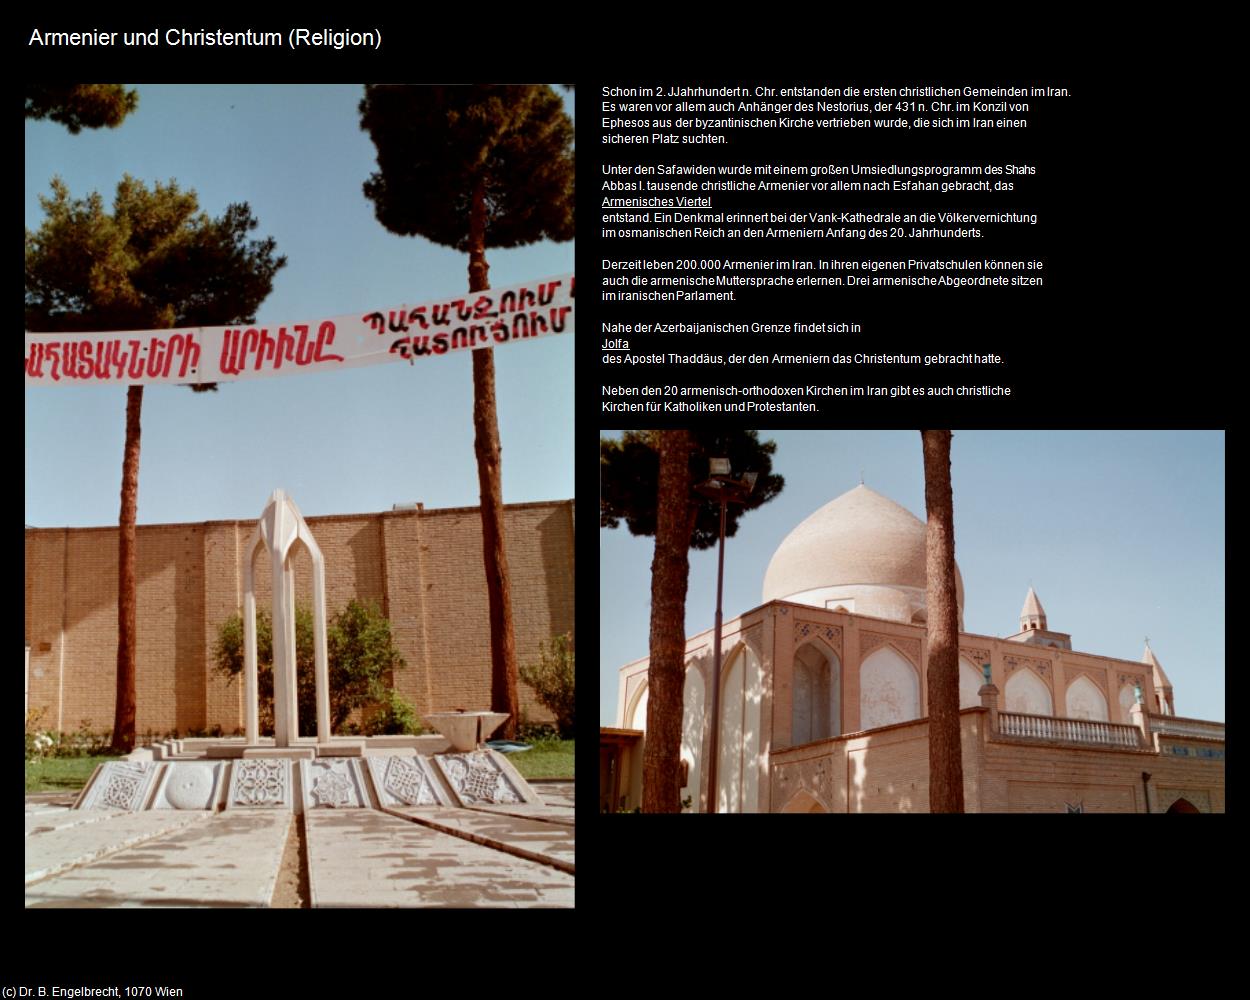 Armenier und Christentum (IRAN-Religion I) in Iran(c)B.Engelbrecht